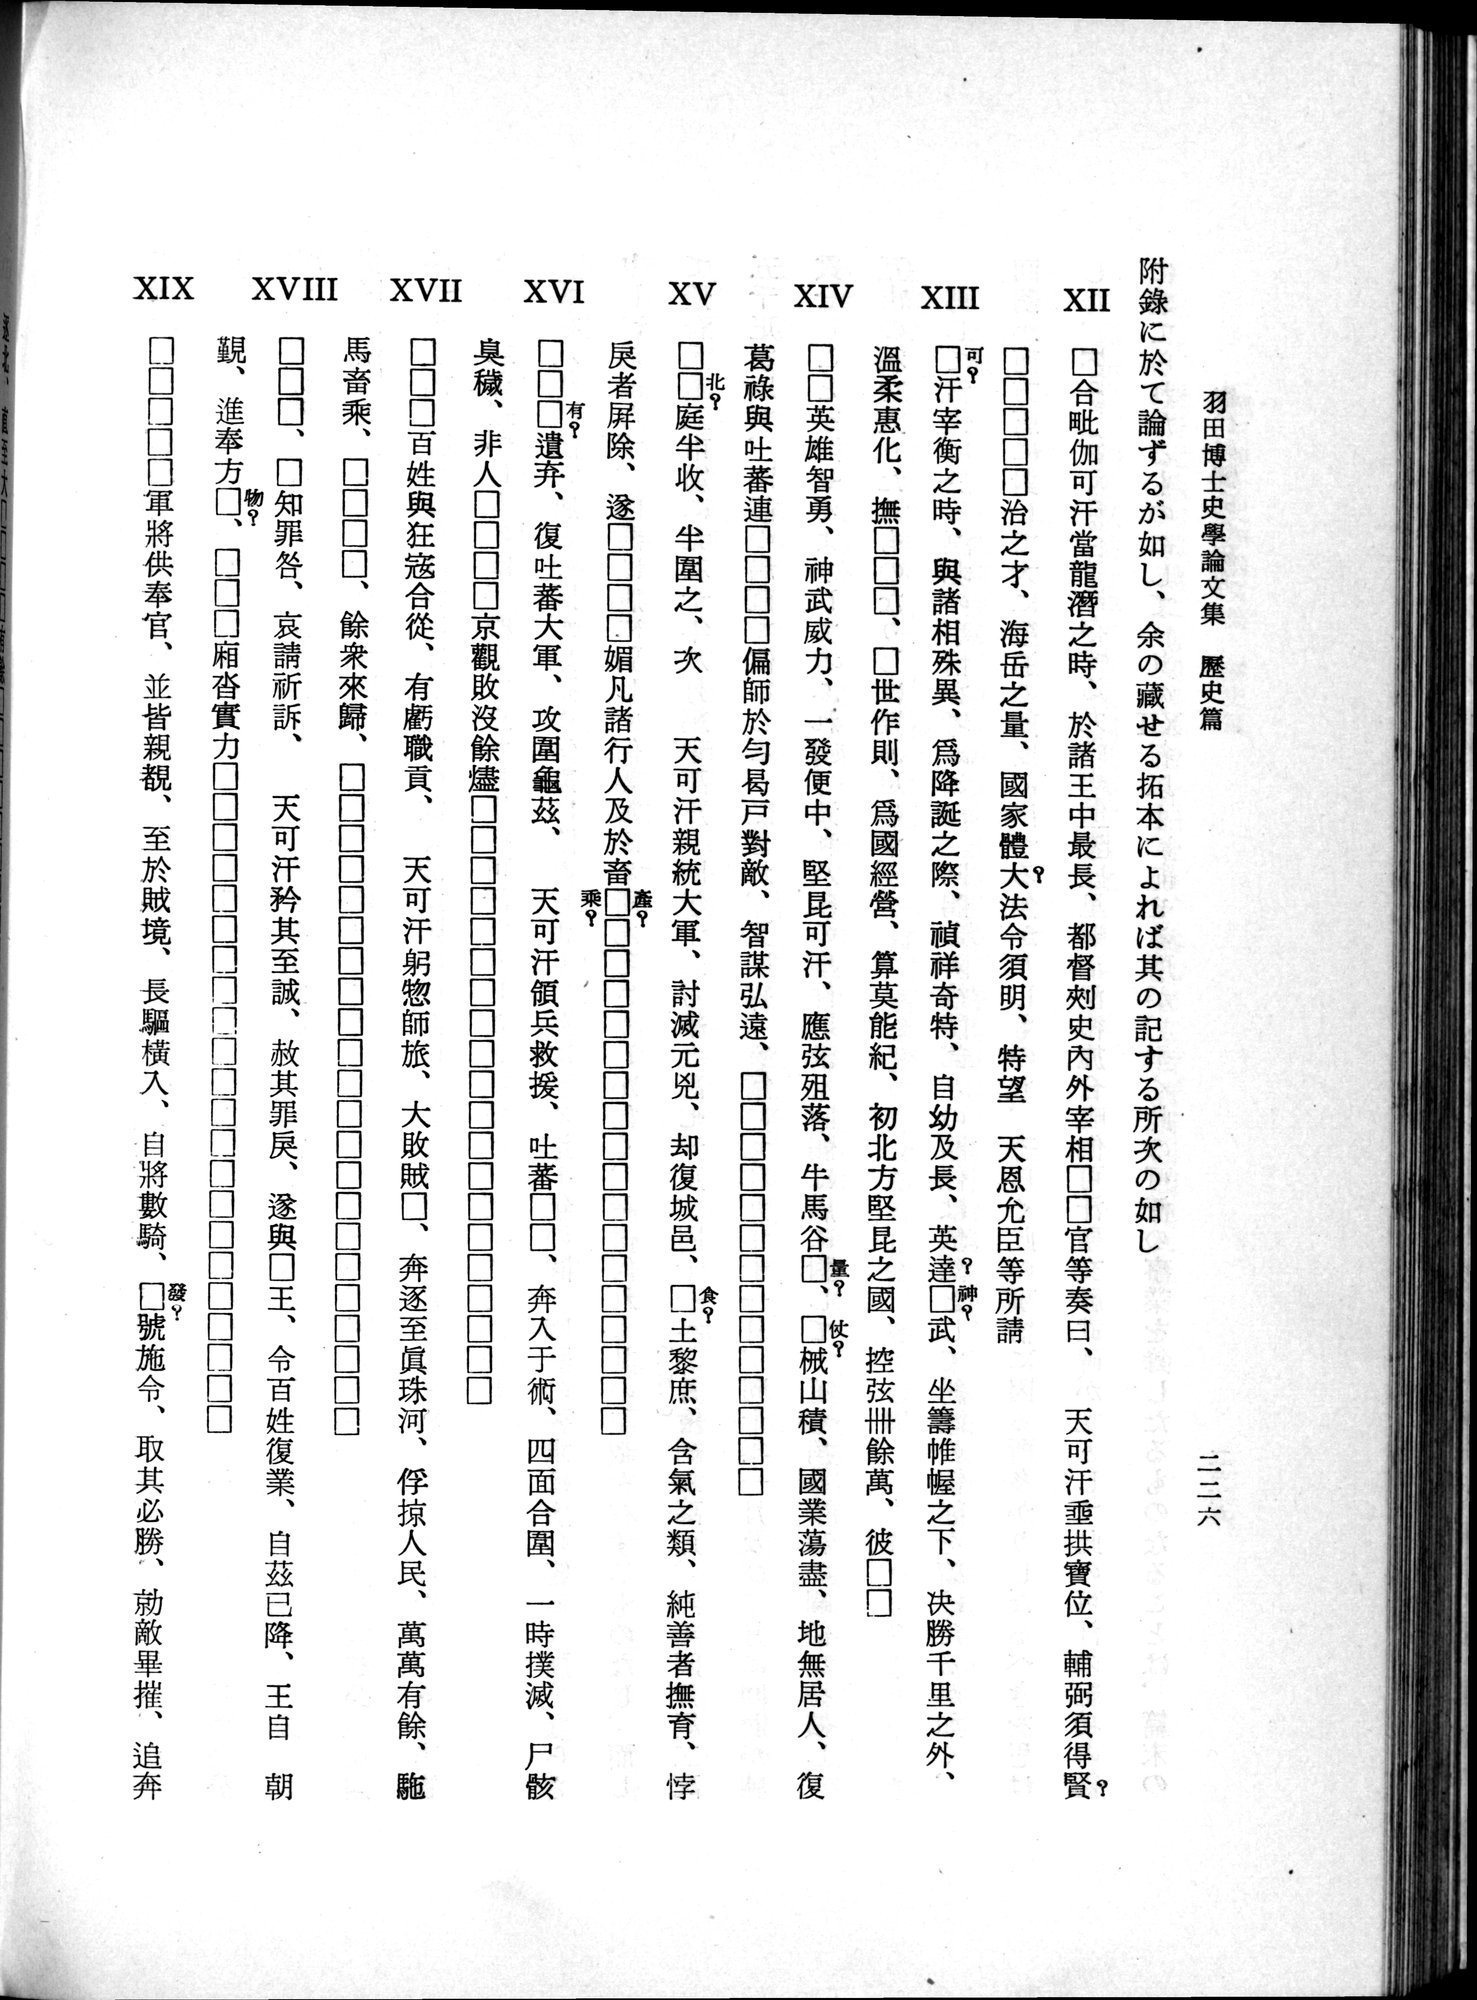 羽田博士史学論文集 : vol.1 / 264 ページ（白黒高解像度画像）